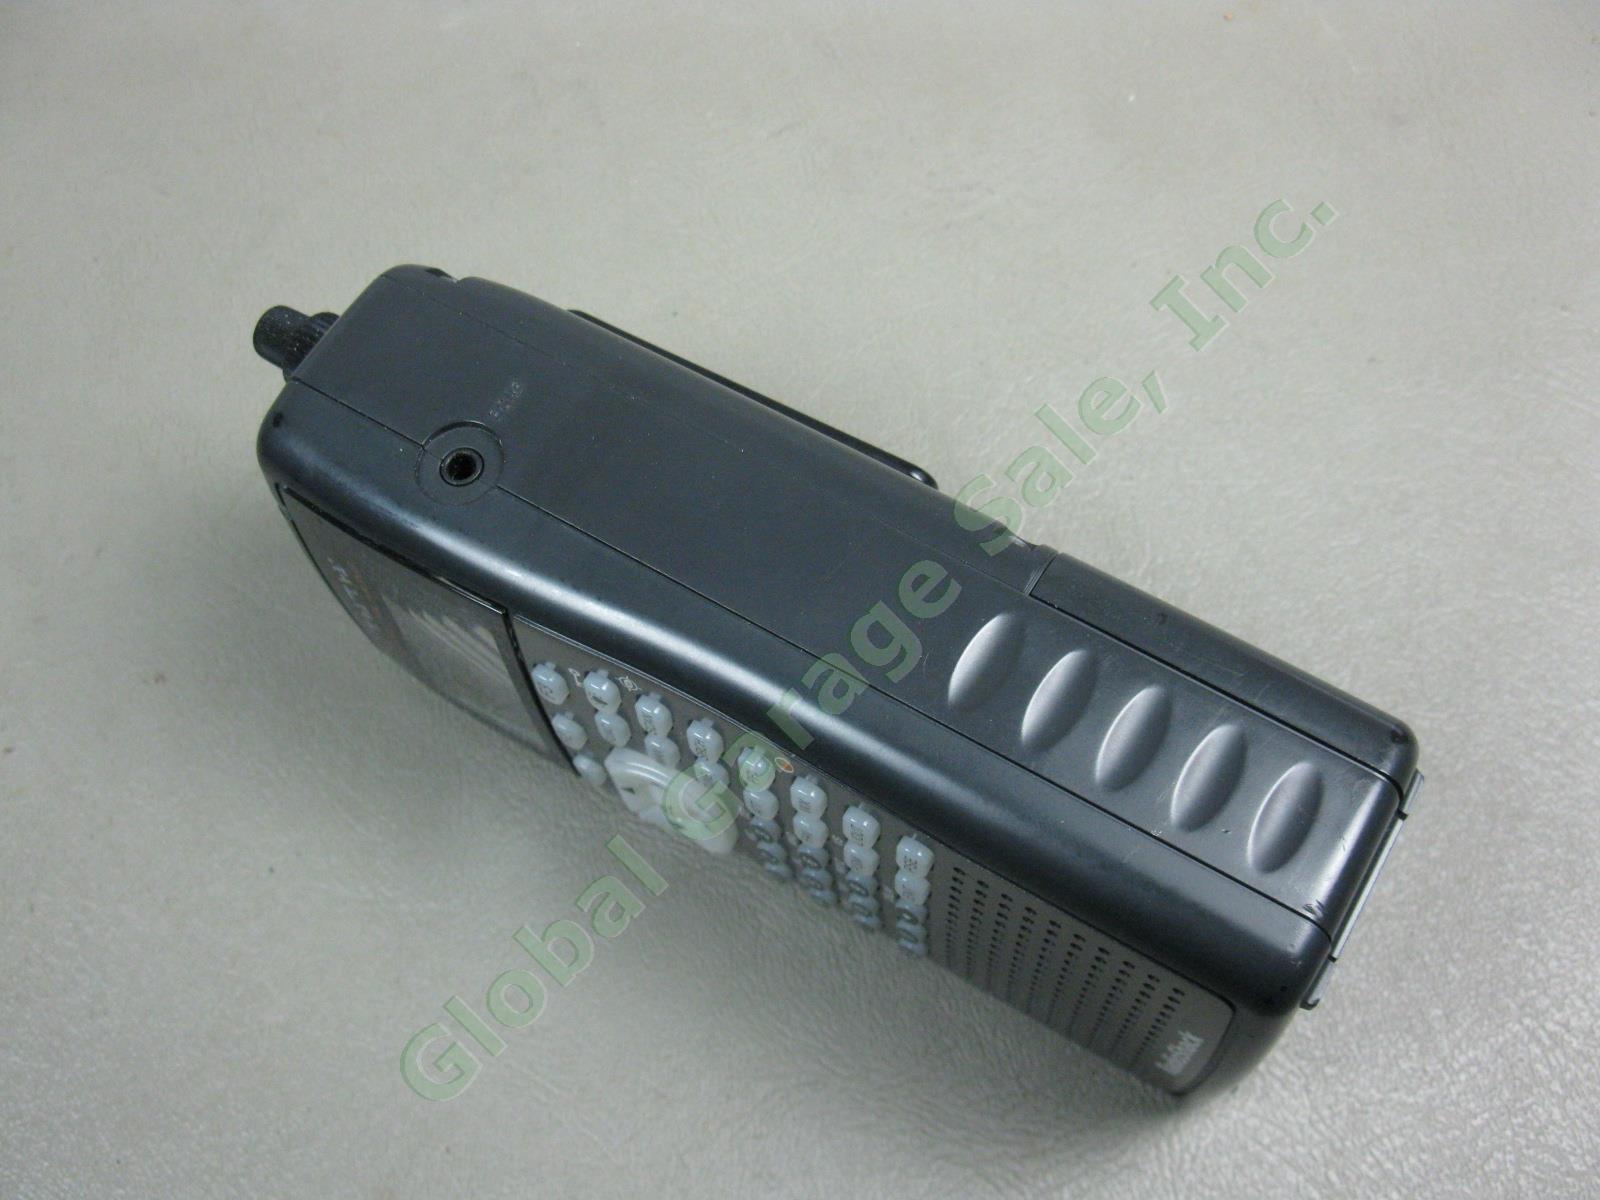 Radio Shack PRO 20 106 Digital Trunking Handheld Scanner + Antenna Manual Bundle 4